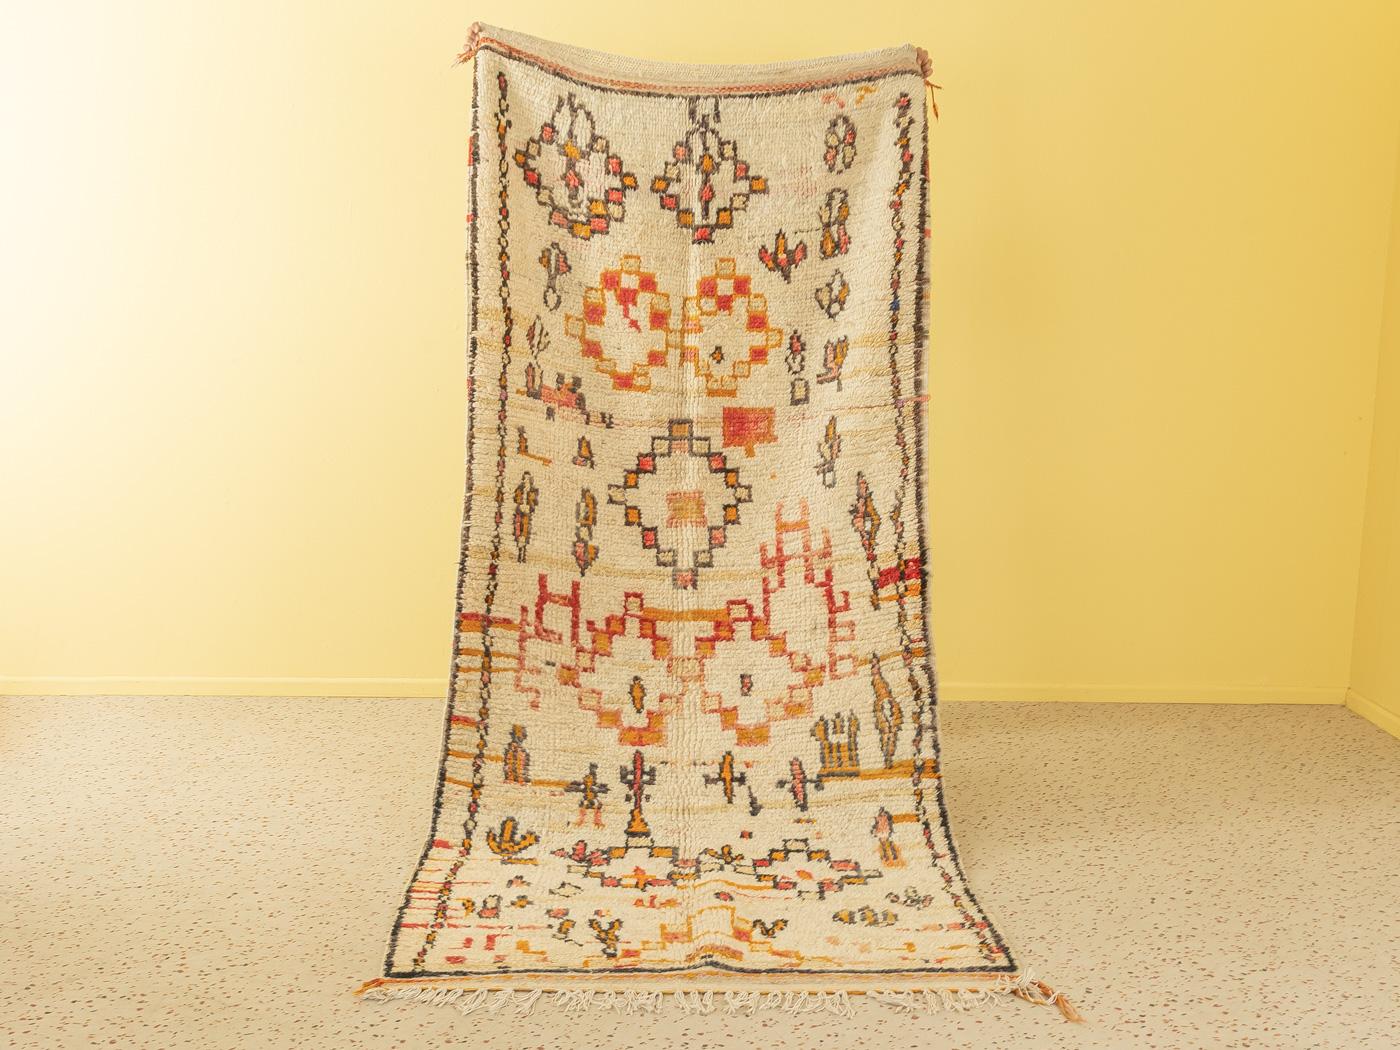 Dieser Vintage Azilal ist ein Teppich aus 100 % Wolle - weich und angenehm zu tragen. Unsere Berberteppiche sind handgefertigt, ein Knoten nach dem anderen. Jeder unserer Berberteppiche ist ein langlebiges Einzelstück, das auf nachhaltige Weise aus